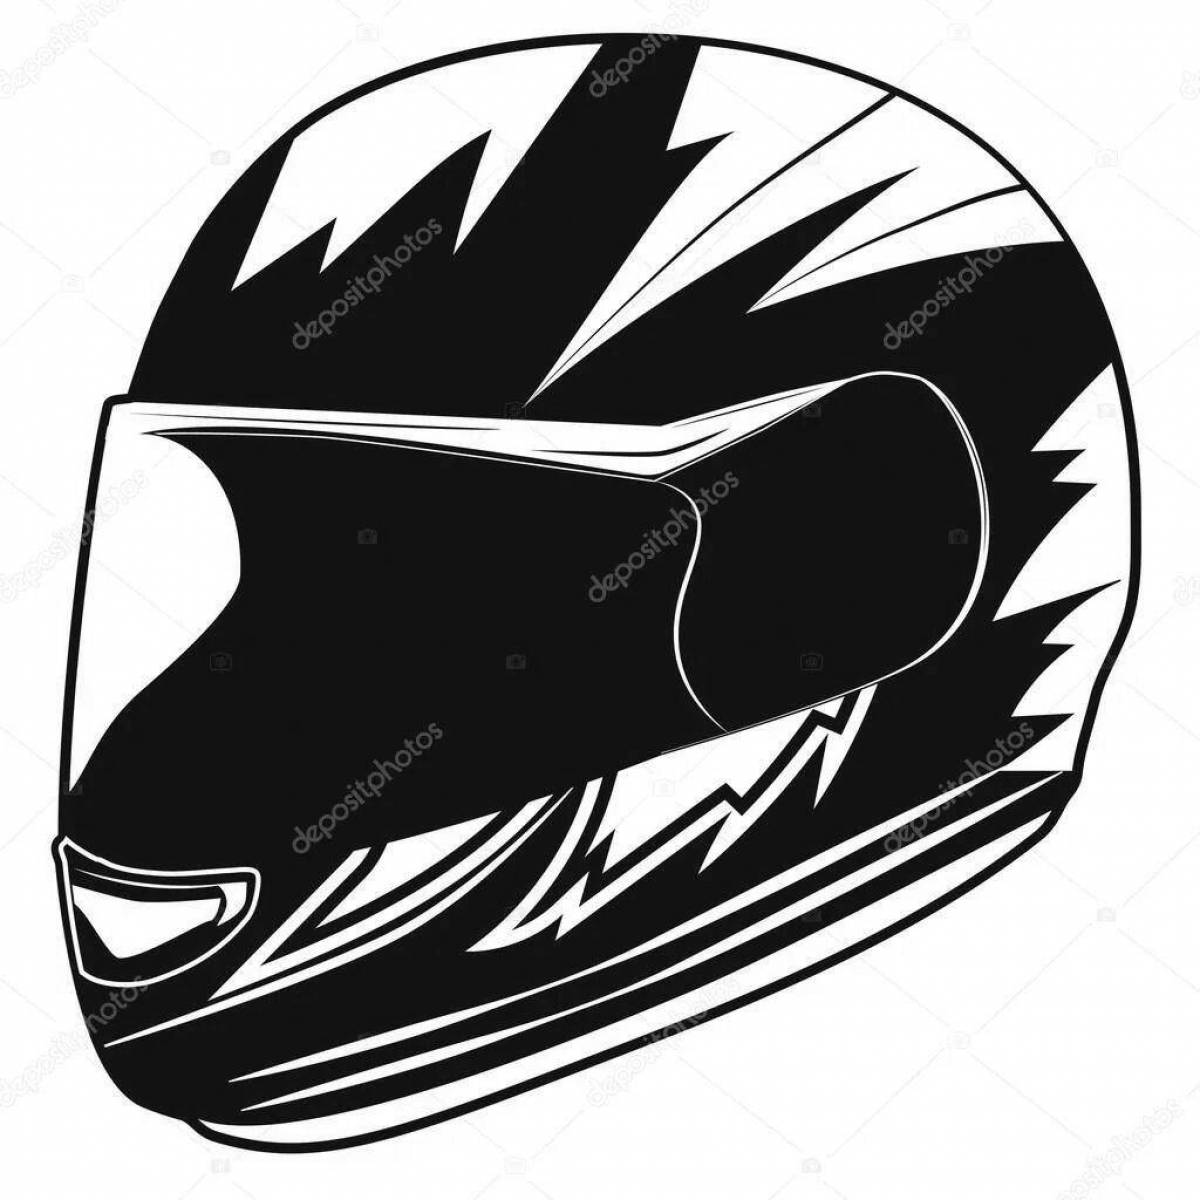 Юмористическая раскраска мотоциклетного шлема